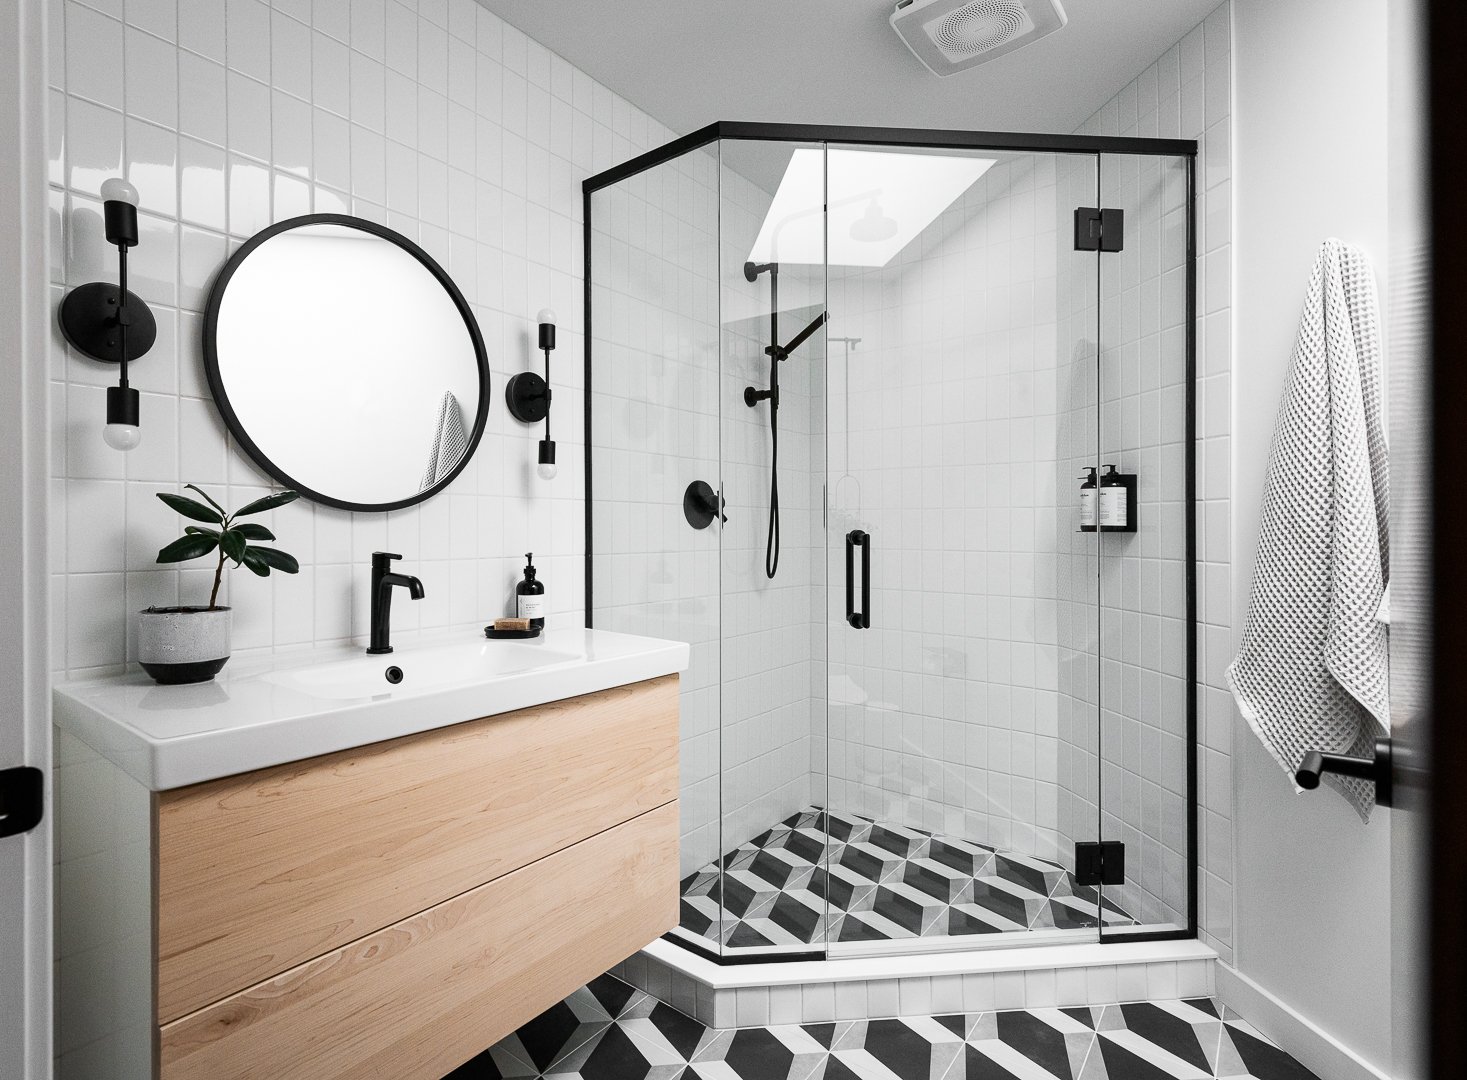 Bathroom Cabinets - IKEA